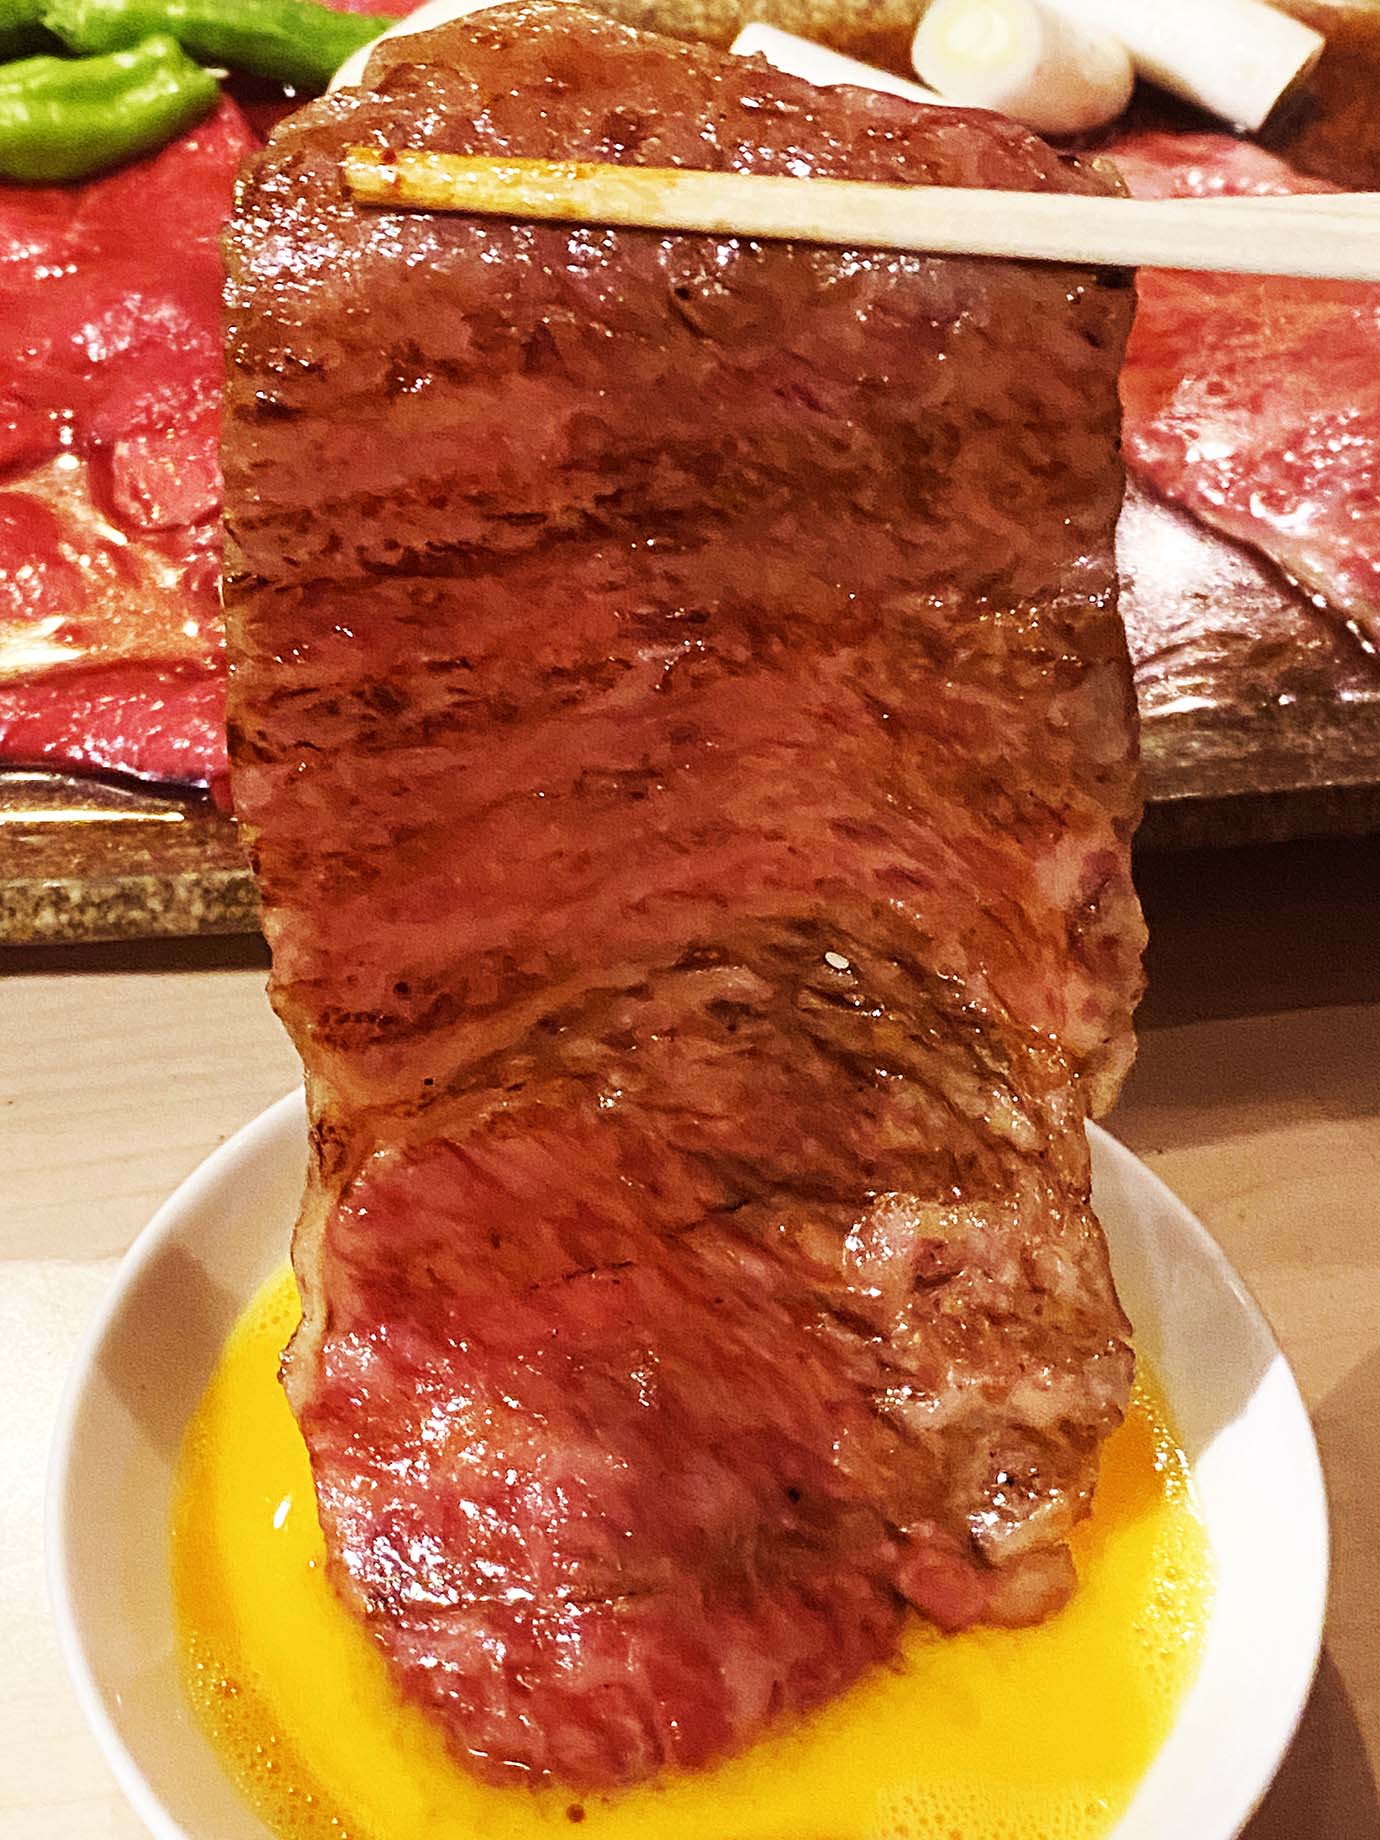 【希少グルメ】予約が取りにくい渋谷の焼肉店「ゆうじ」に行ってみたら赤身肉がウマかった